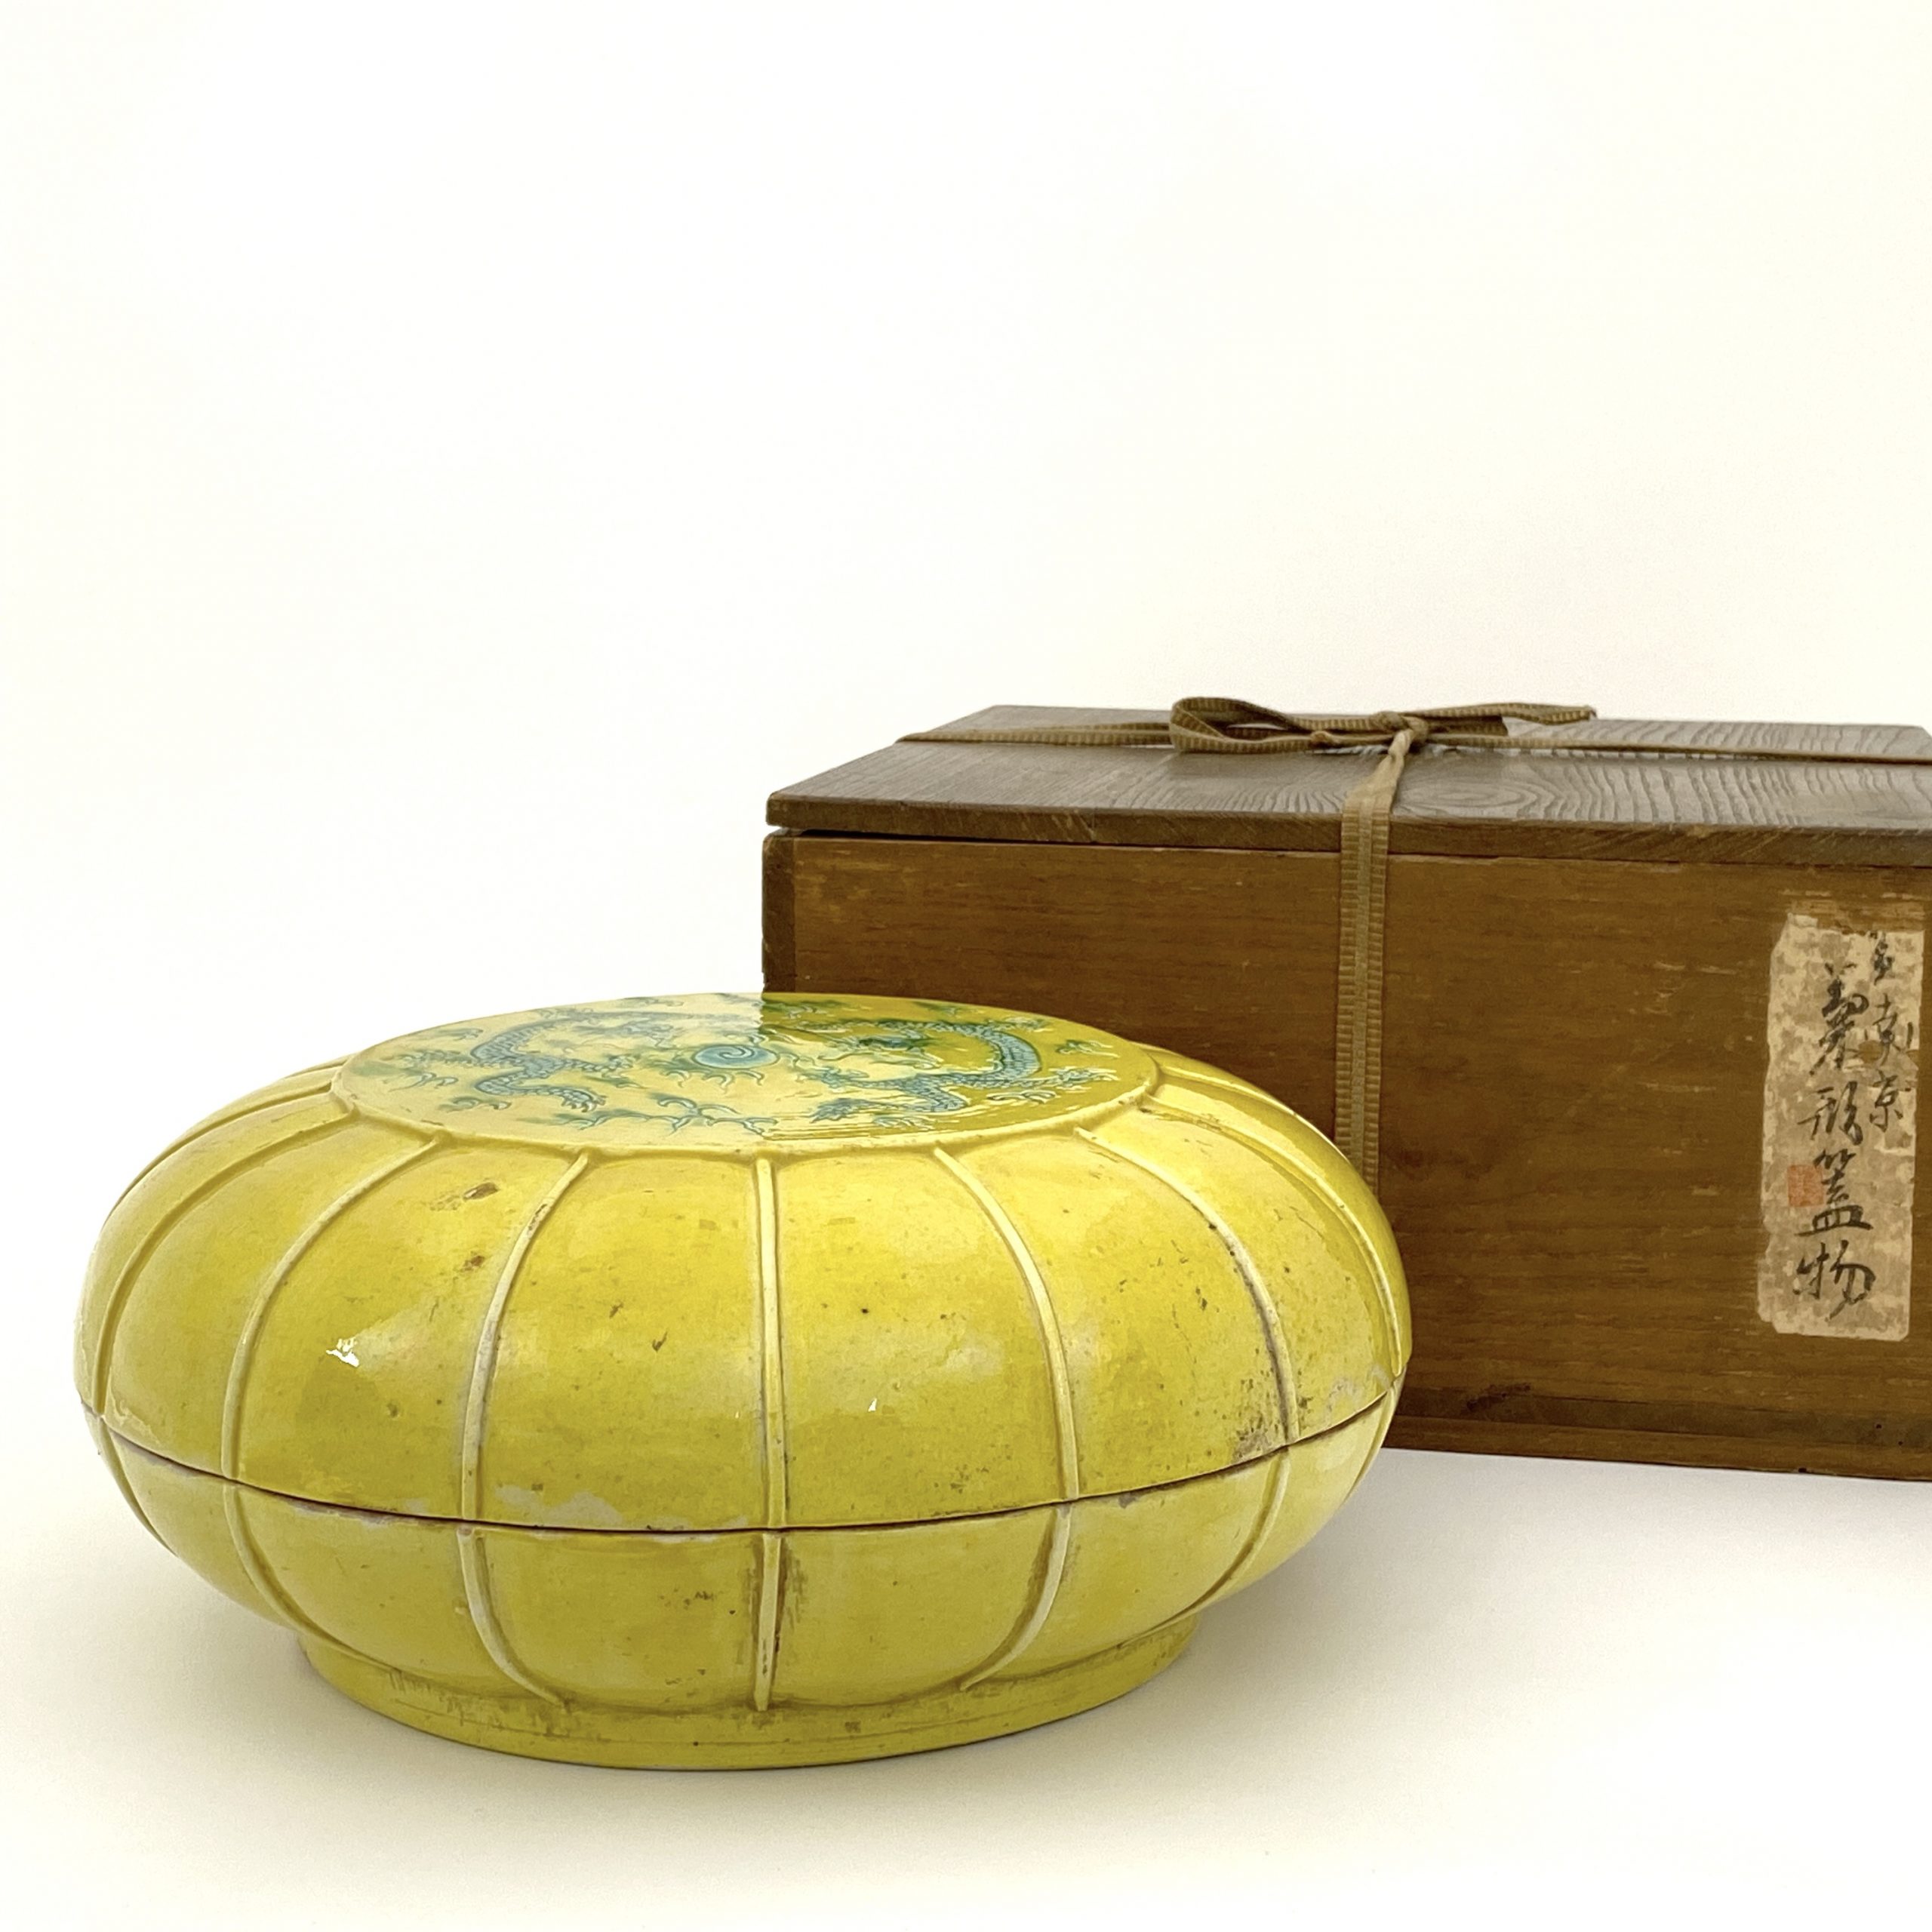 27264	「大明萬暦年製」款 黄地緑彩 雙龍紋 蓋盒